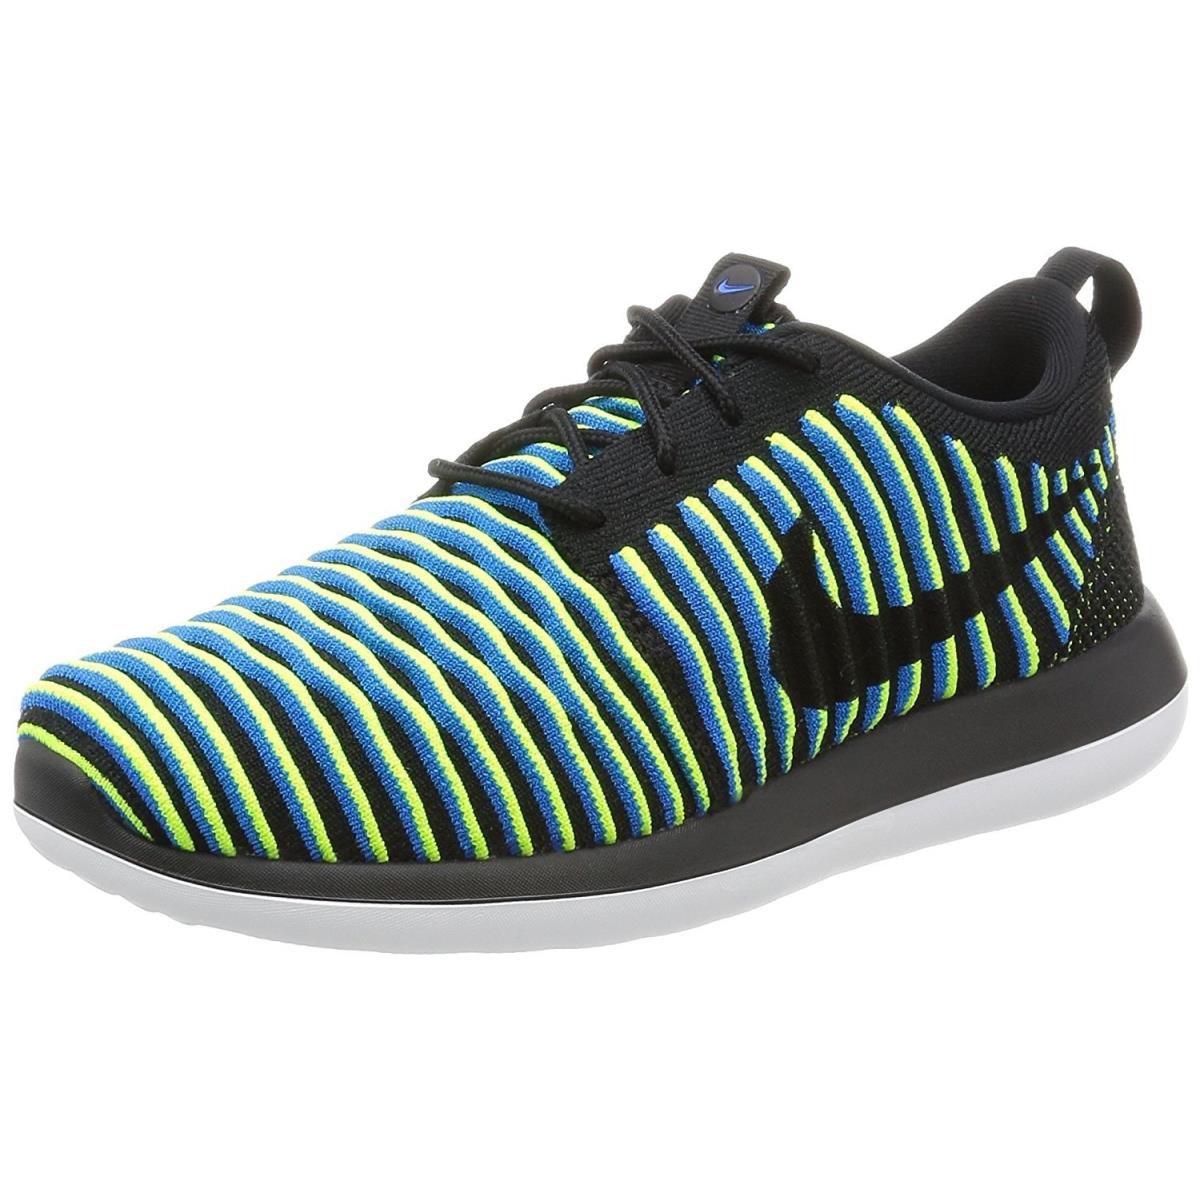 Nike Women`s Roshe Two Flyknit Running Shoes Black/Black-photo Blue-volt